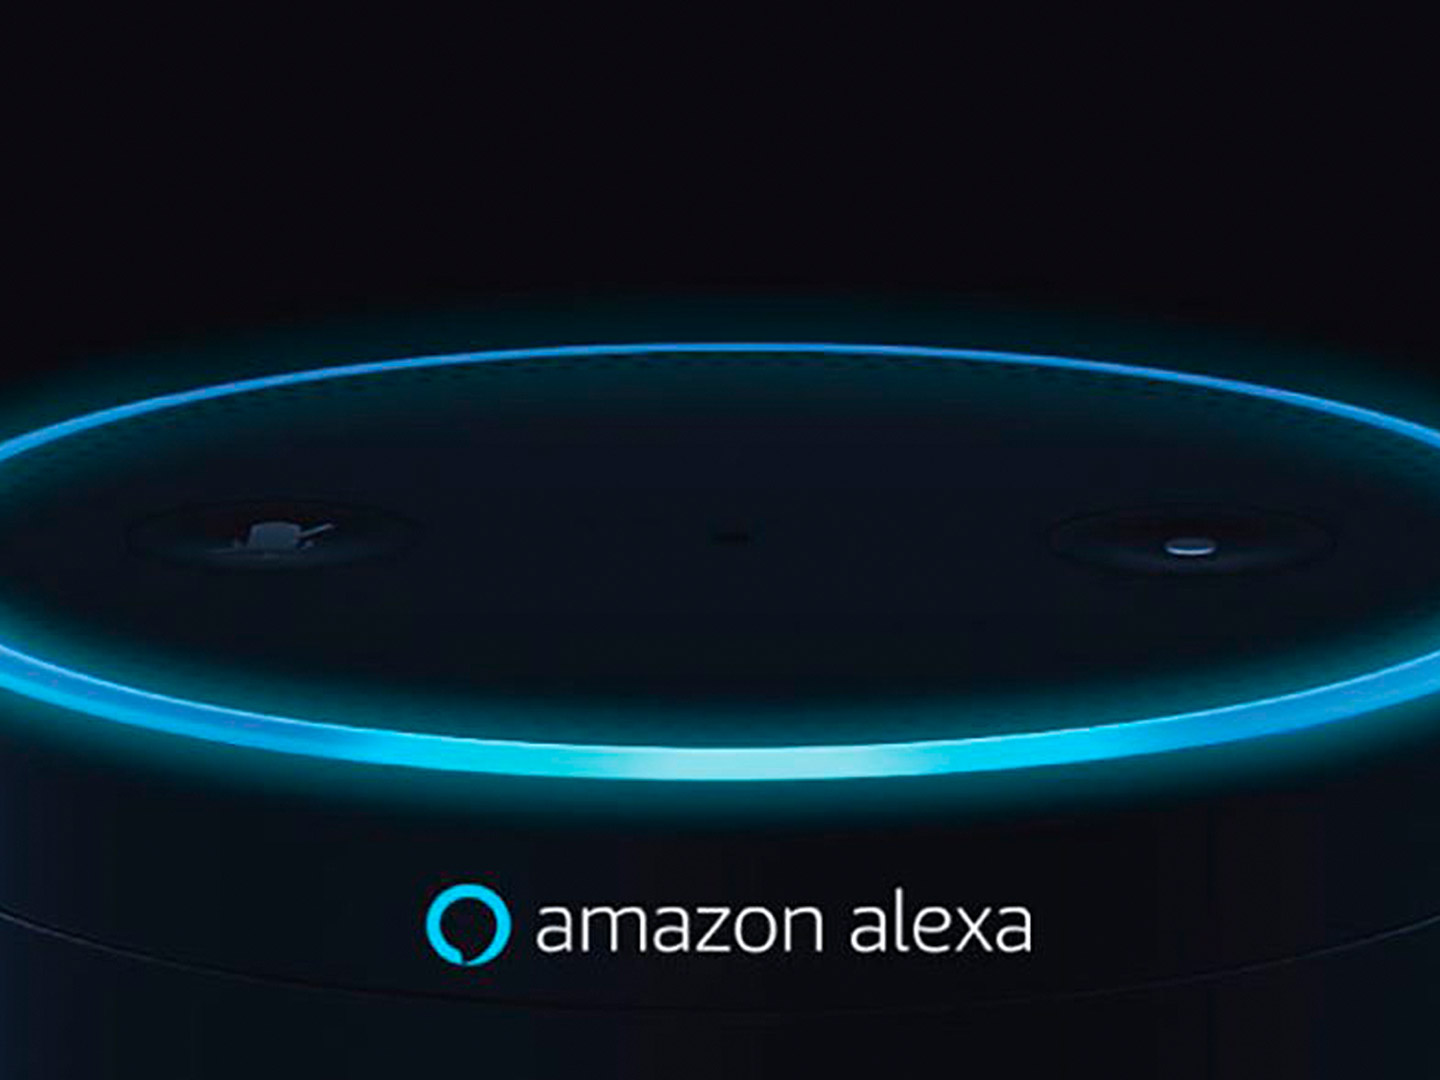 Алекса голосовой. Amazon Alexa. Alexa голосовой помощник. Amazon Alexa голосовой помощник. Умная колонка будущего.